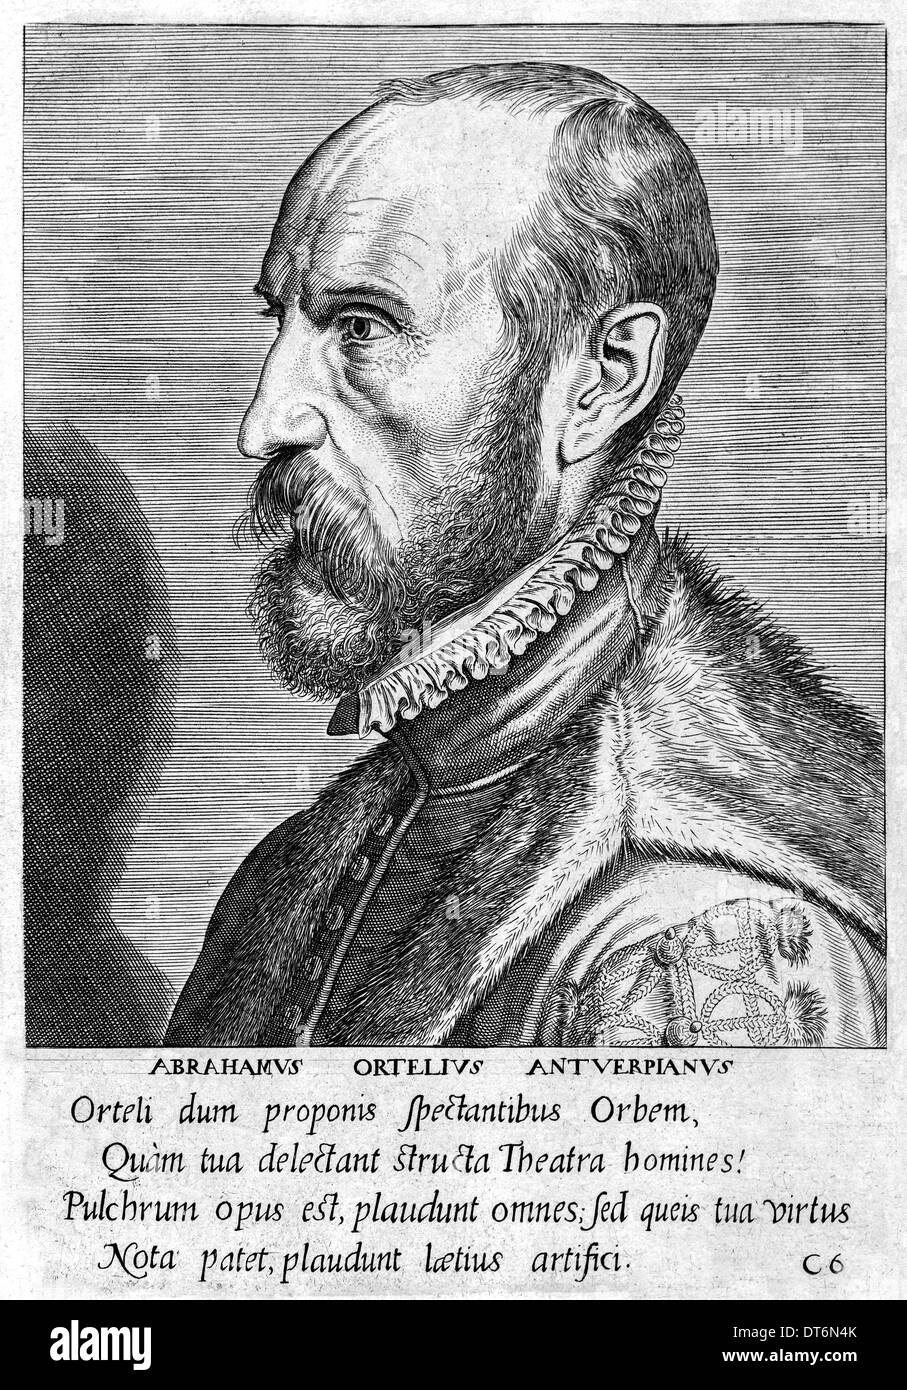 Abraham Ortelius (1527-1598) flämischen Kartographen Schöpfer des ersten modernen Atlas Theatrum Orbis Terrarum (Theater der Welt). Stockfoto